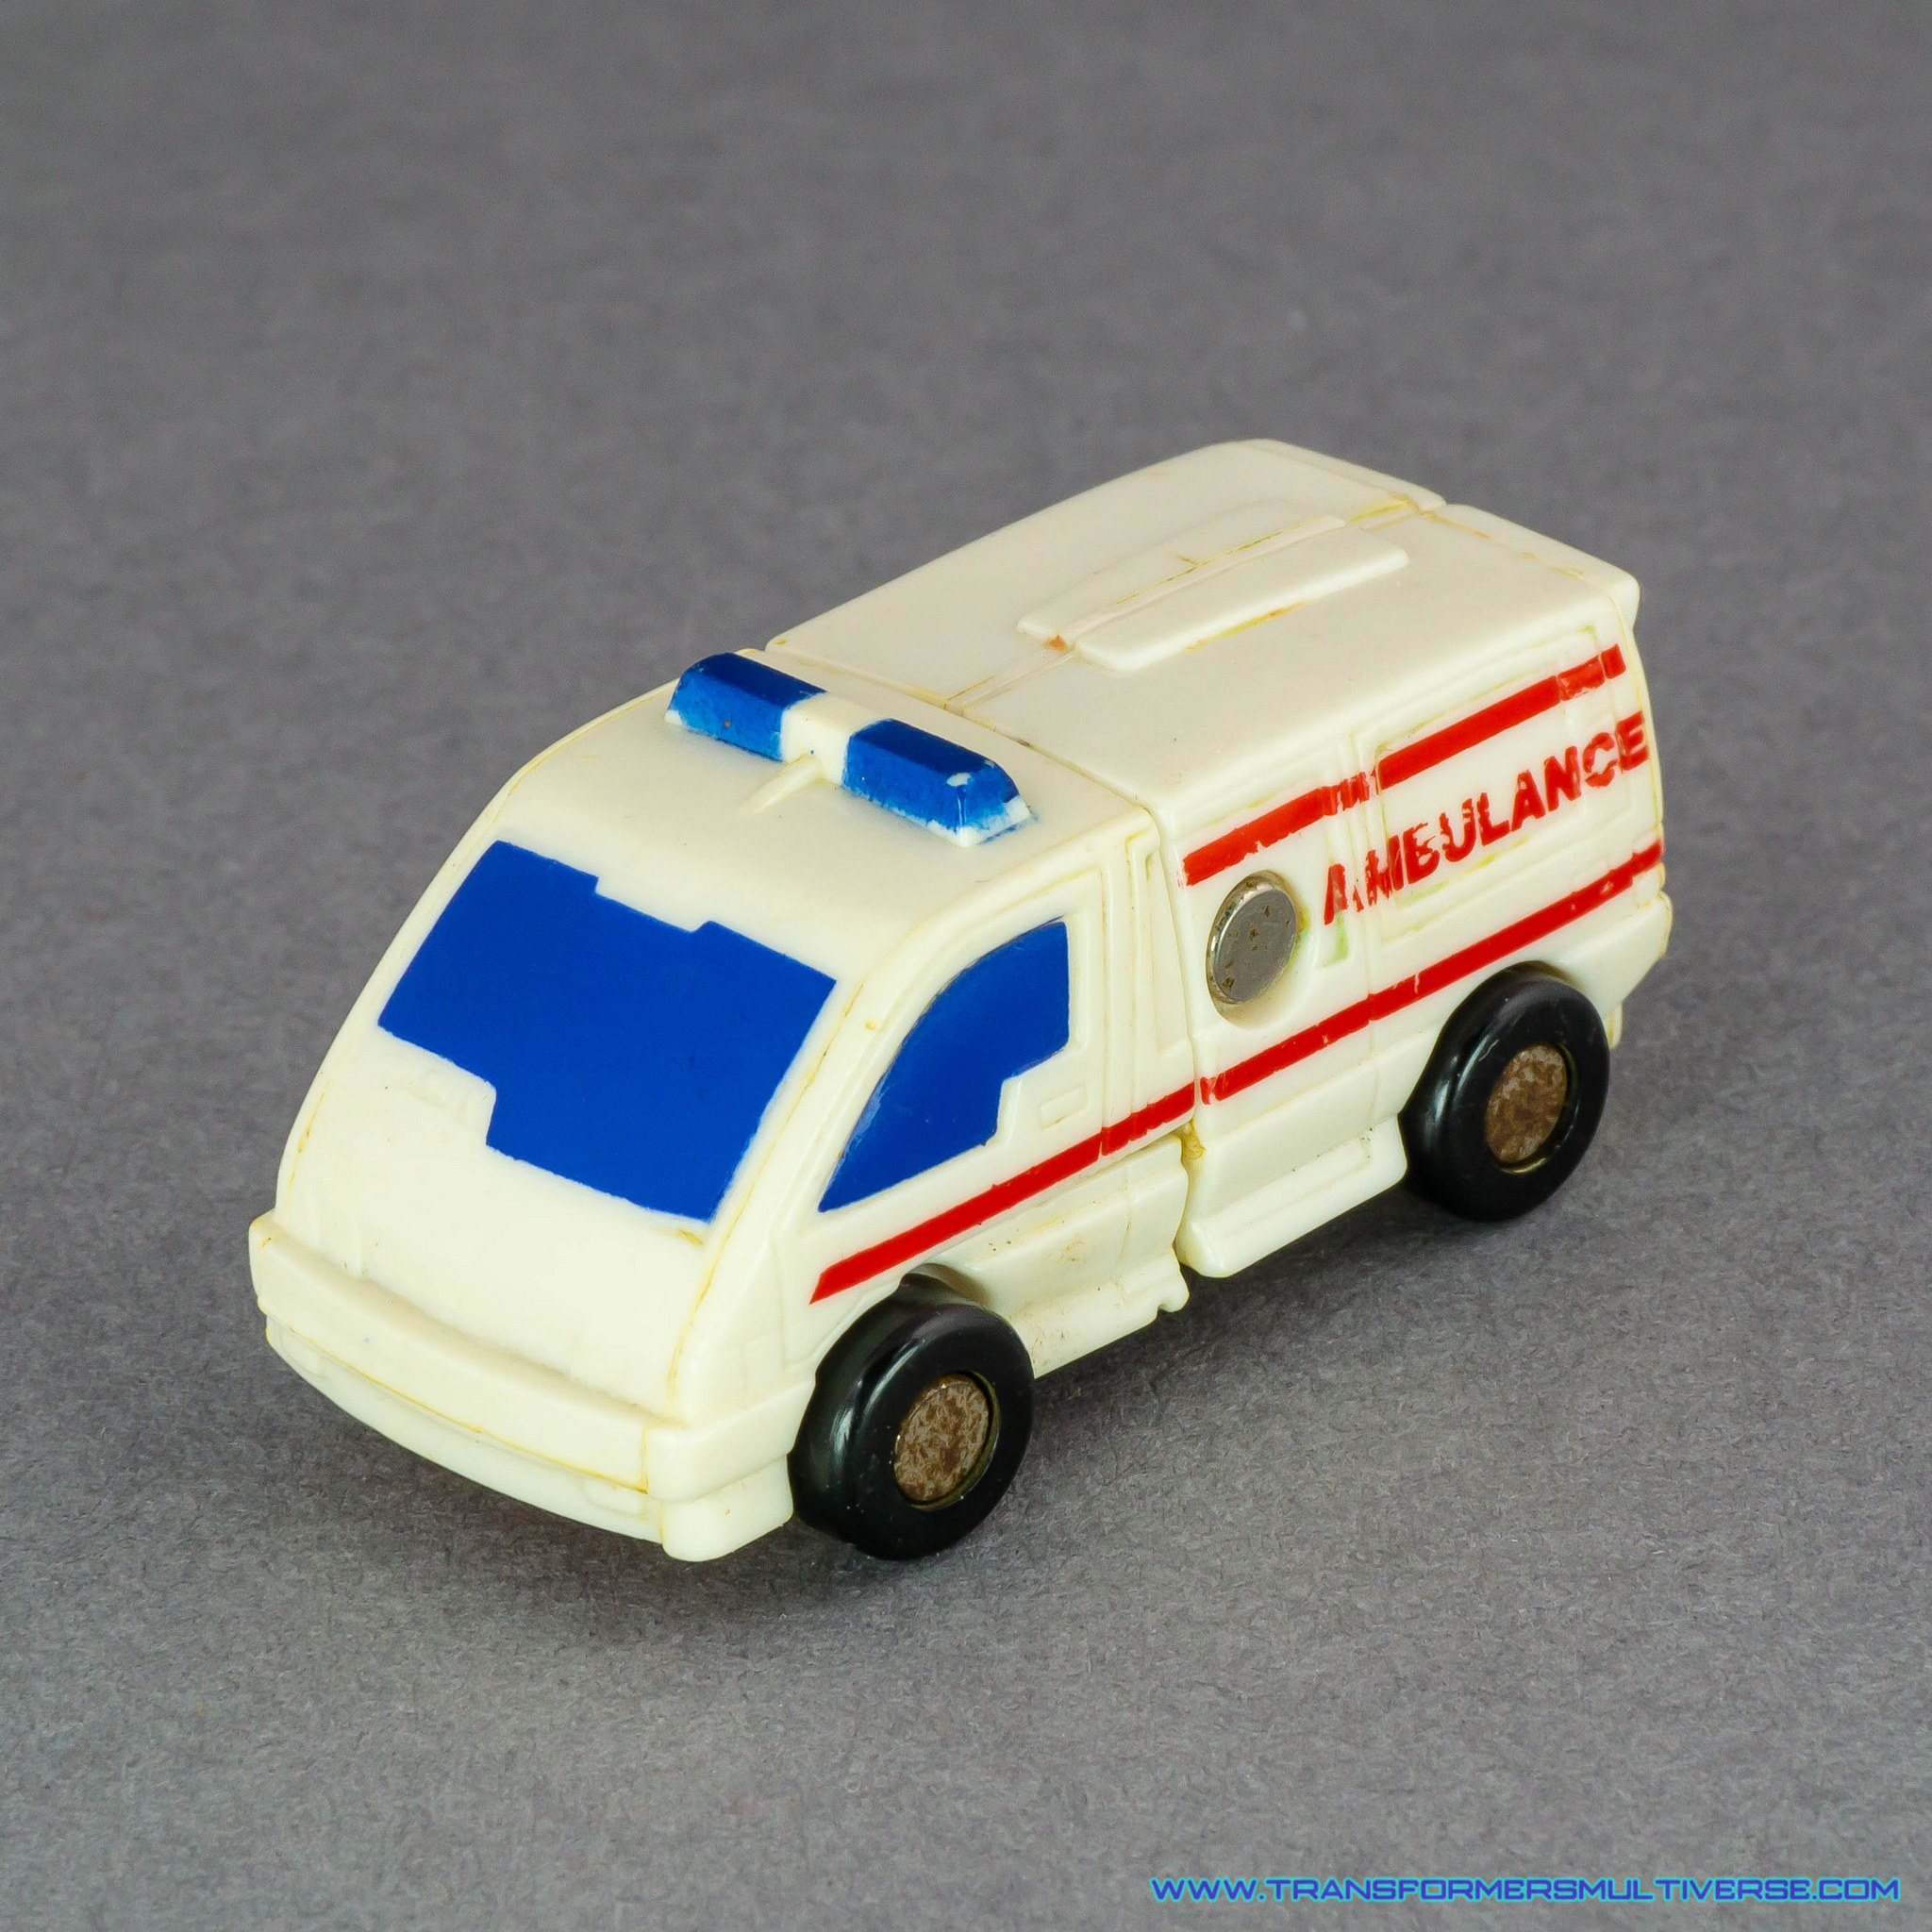 Transformers Generation 1 Fixit Ambulance mode alternate angle